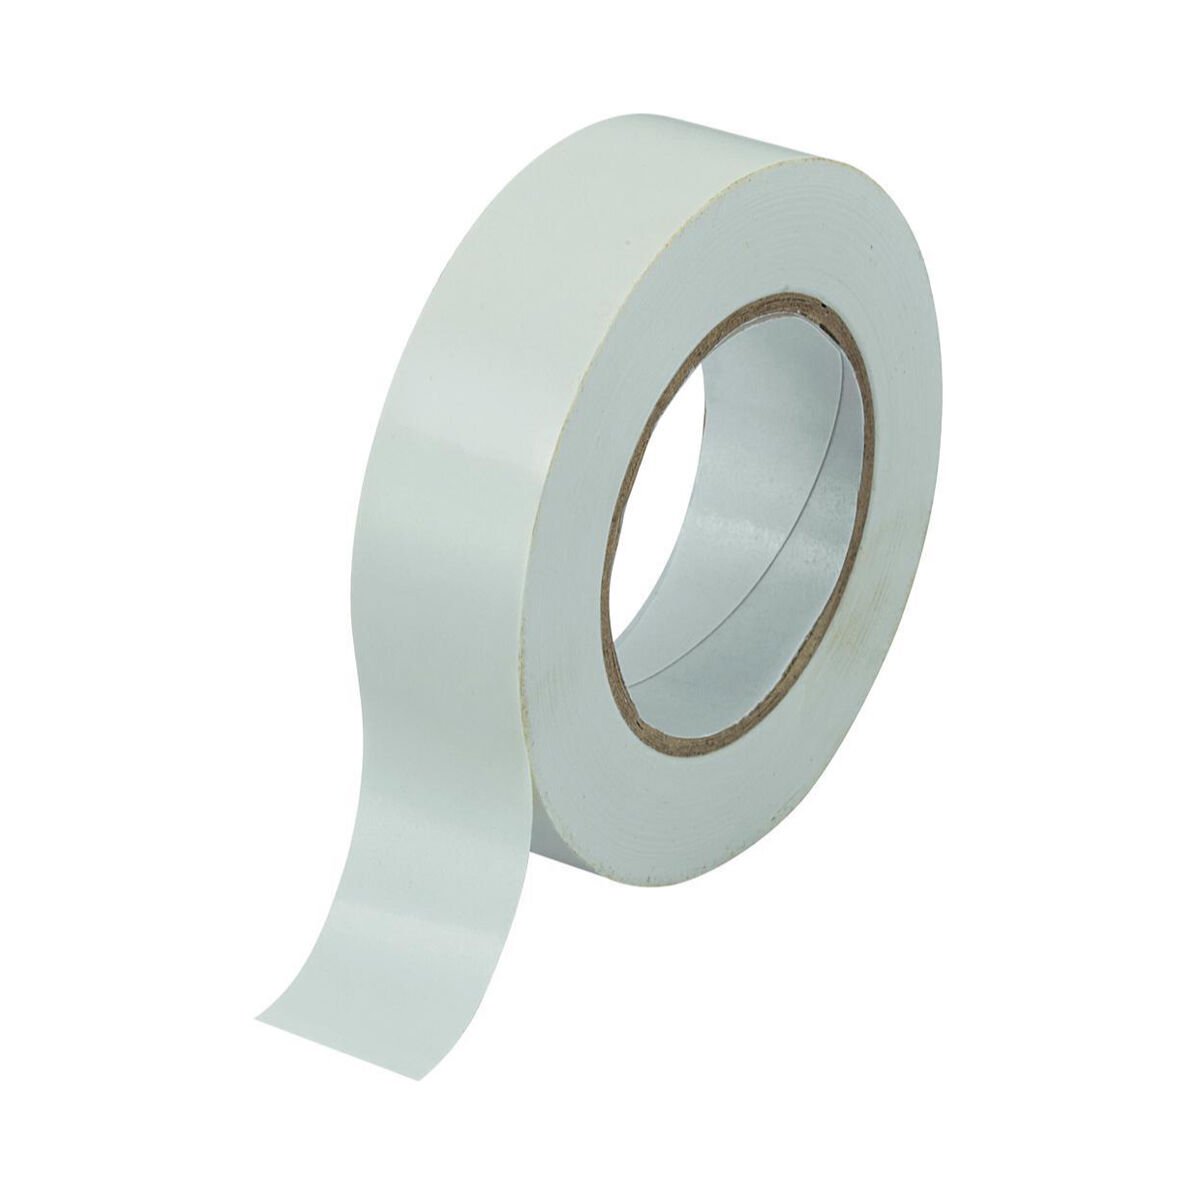 Vini PVC Insulation Tape (White)